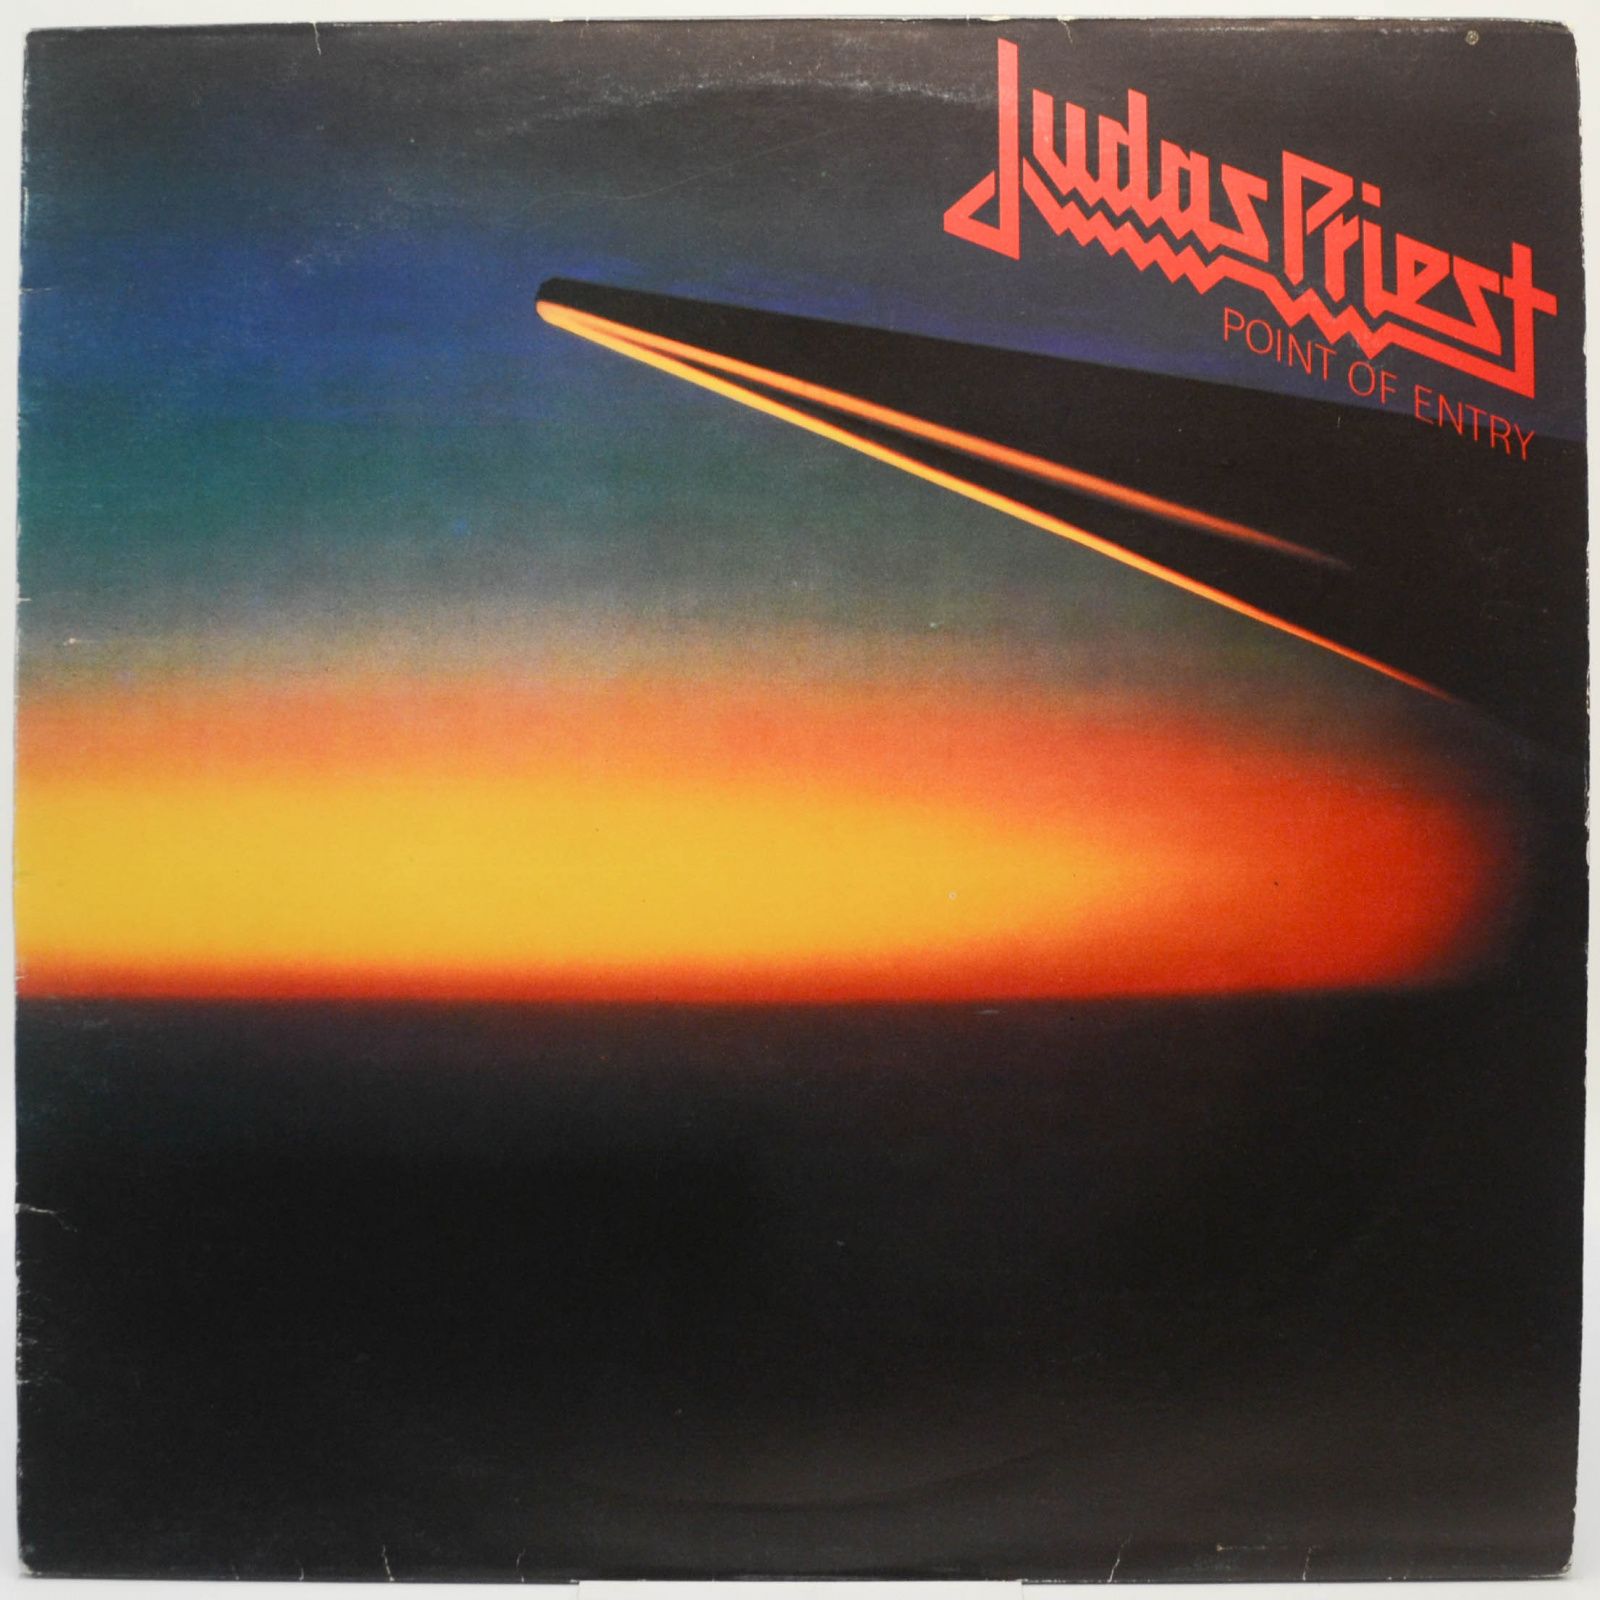 Judas Priest